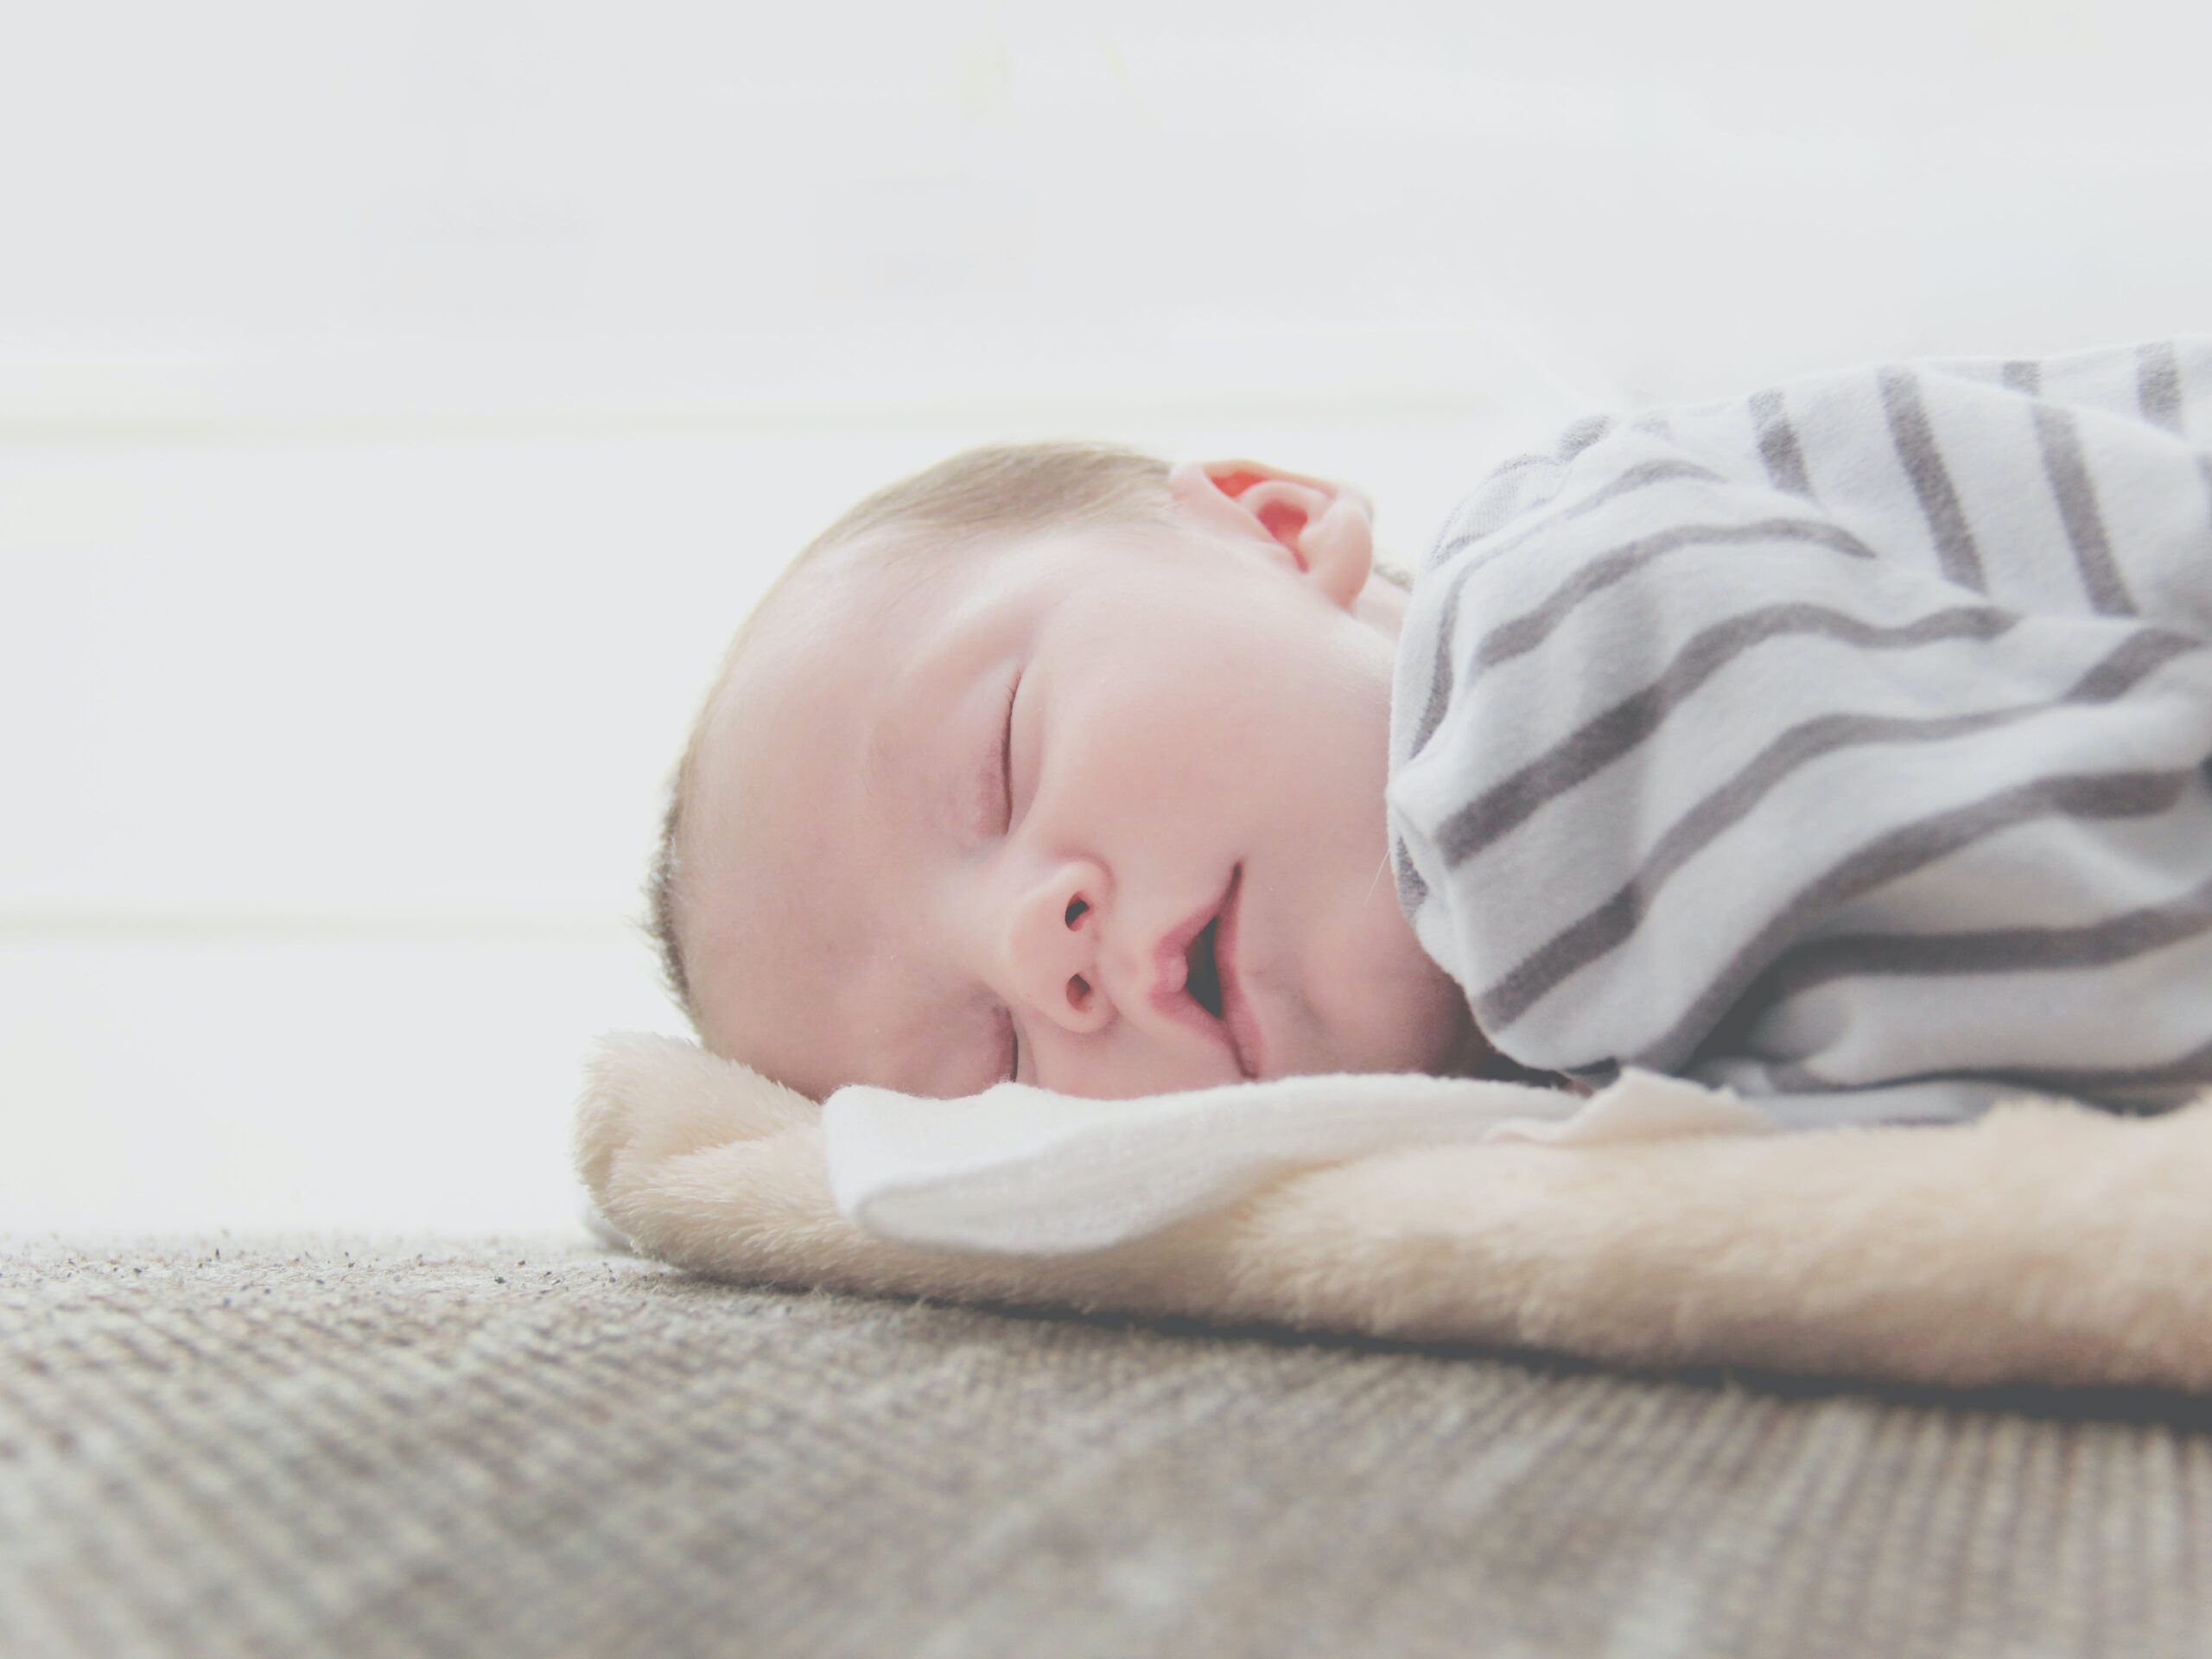 Materac dla niemowlaka – jak wybrać najlepszy?